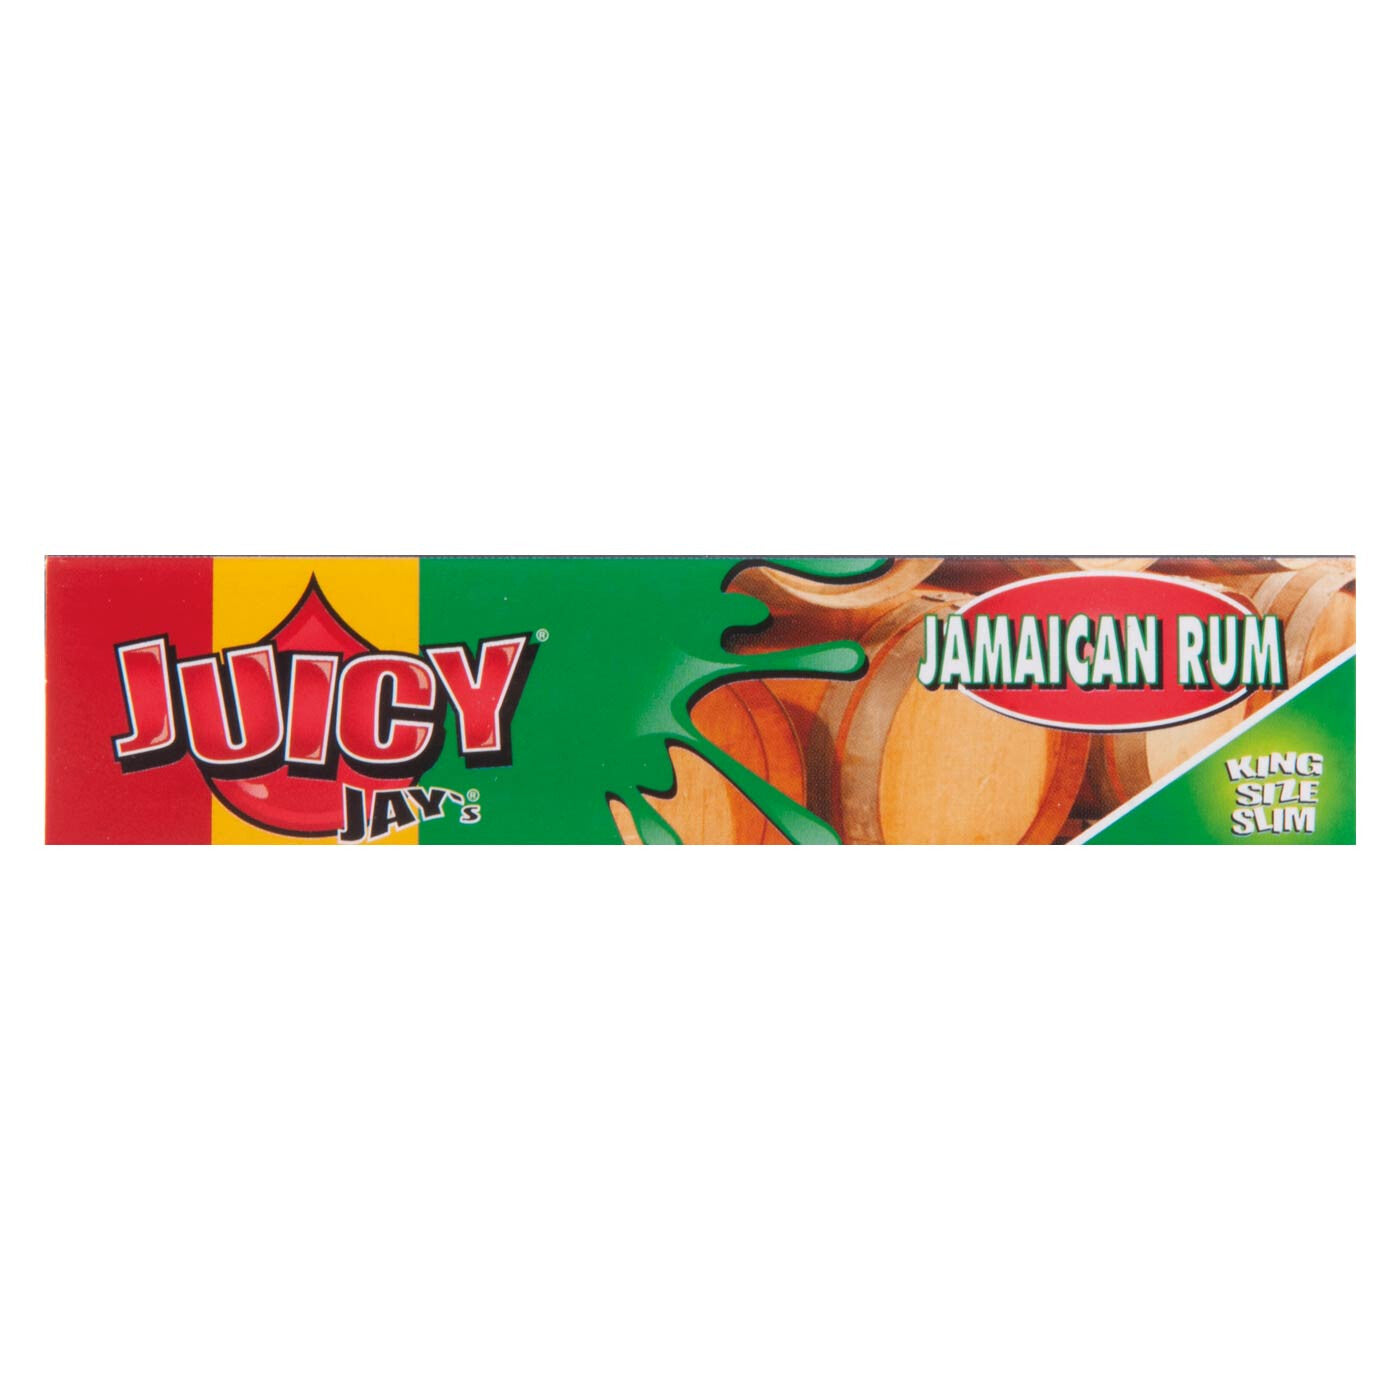 Juicy Jays Jamaican Rum Kss 1 PC voorkant